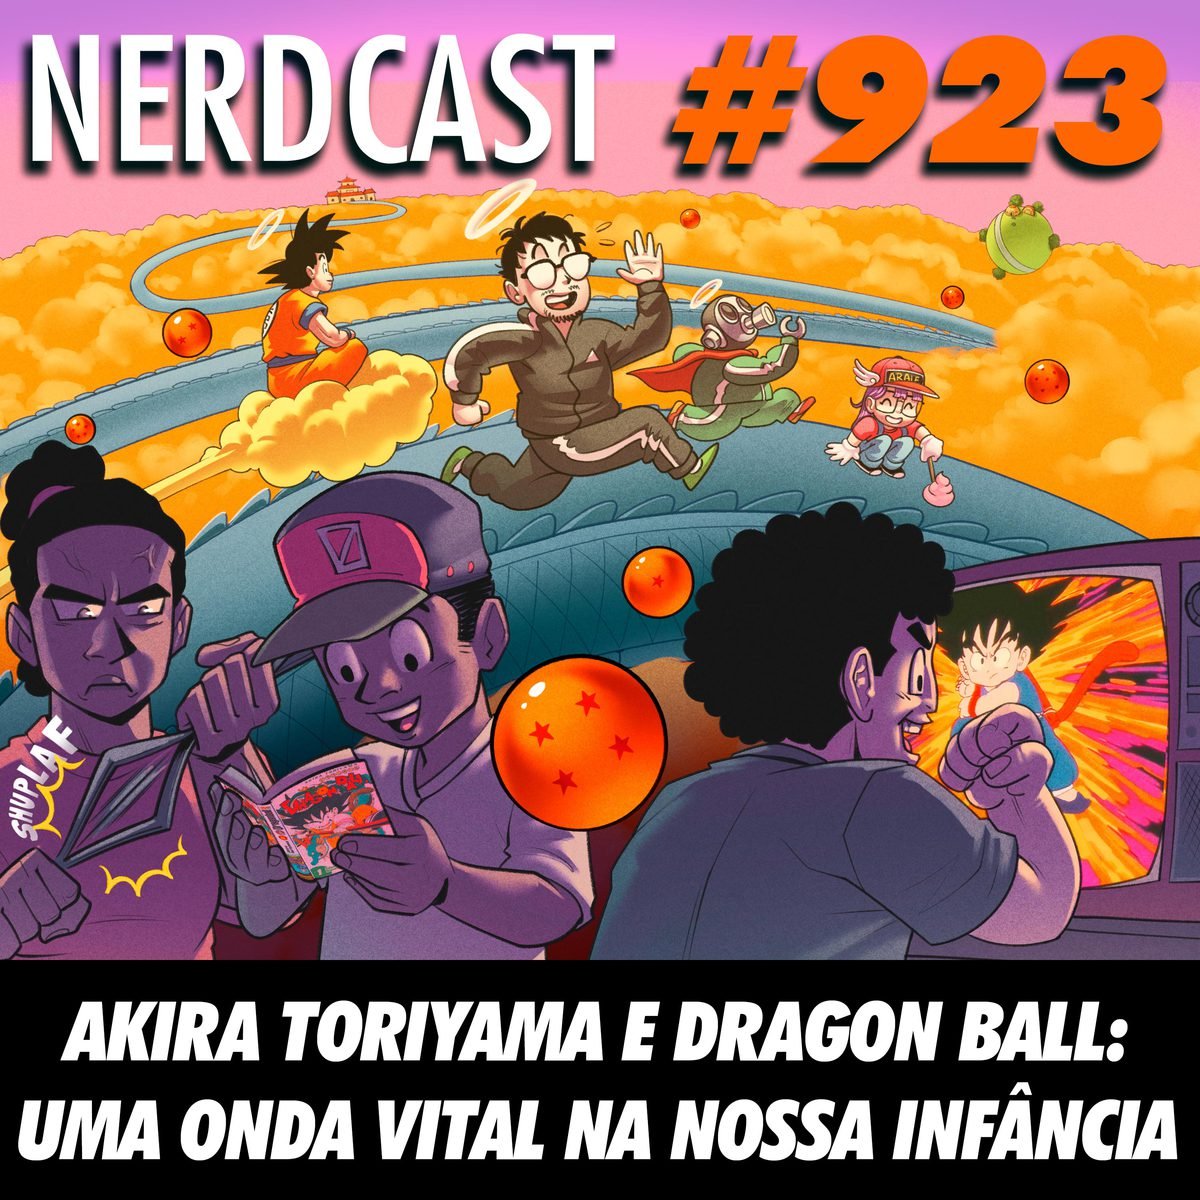 NerdCast 923 - Akira Toriyama e Dragon Ball: uma onda vital na nossa infância